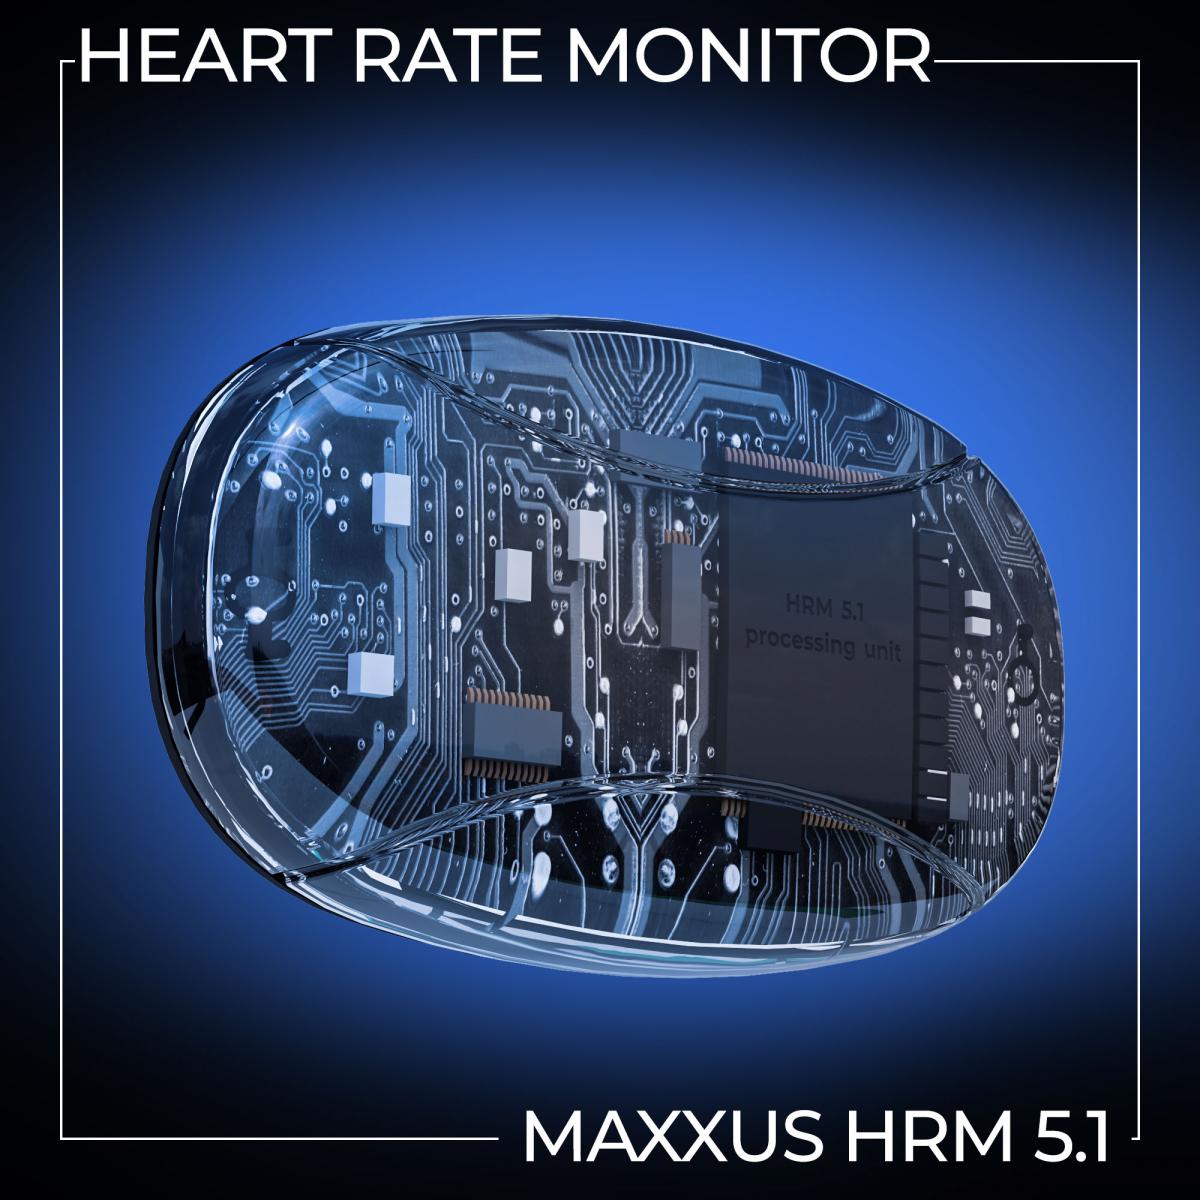 Herzfrequenz Monitor HRM 5.1